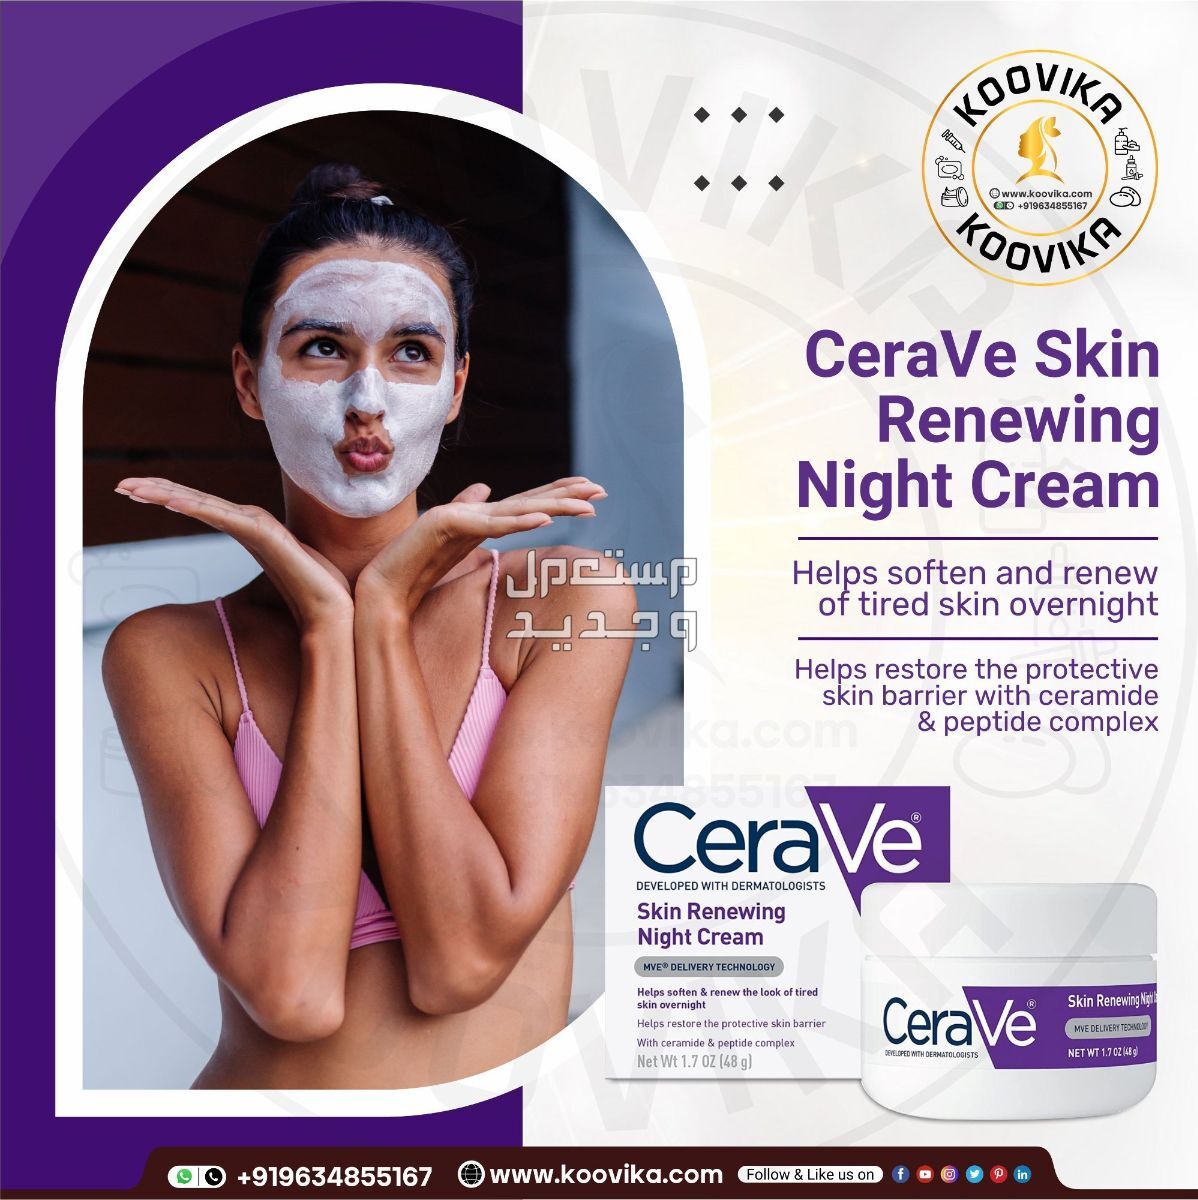 أفضل كريم ليلي للعناية بالبشرة لعام 2023 في السودان شكل كريم ليلي من CeraVe Skin Renewing Night Cream على البشرة